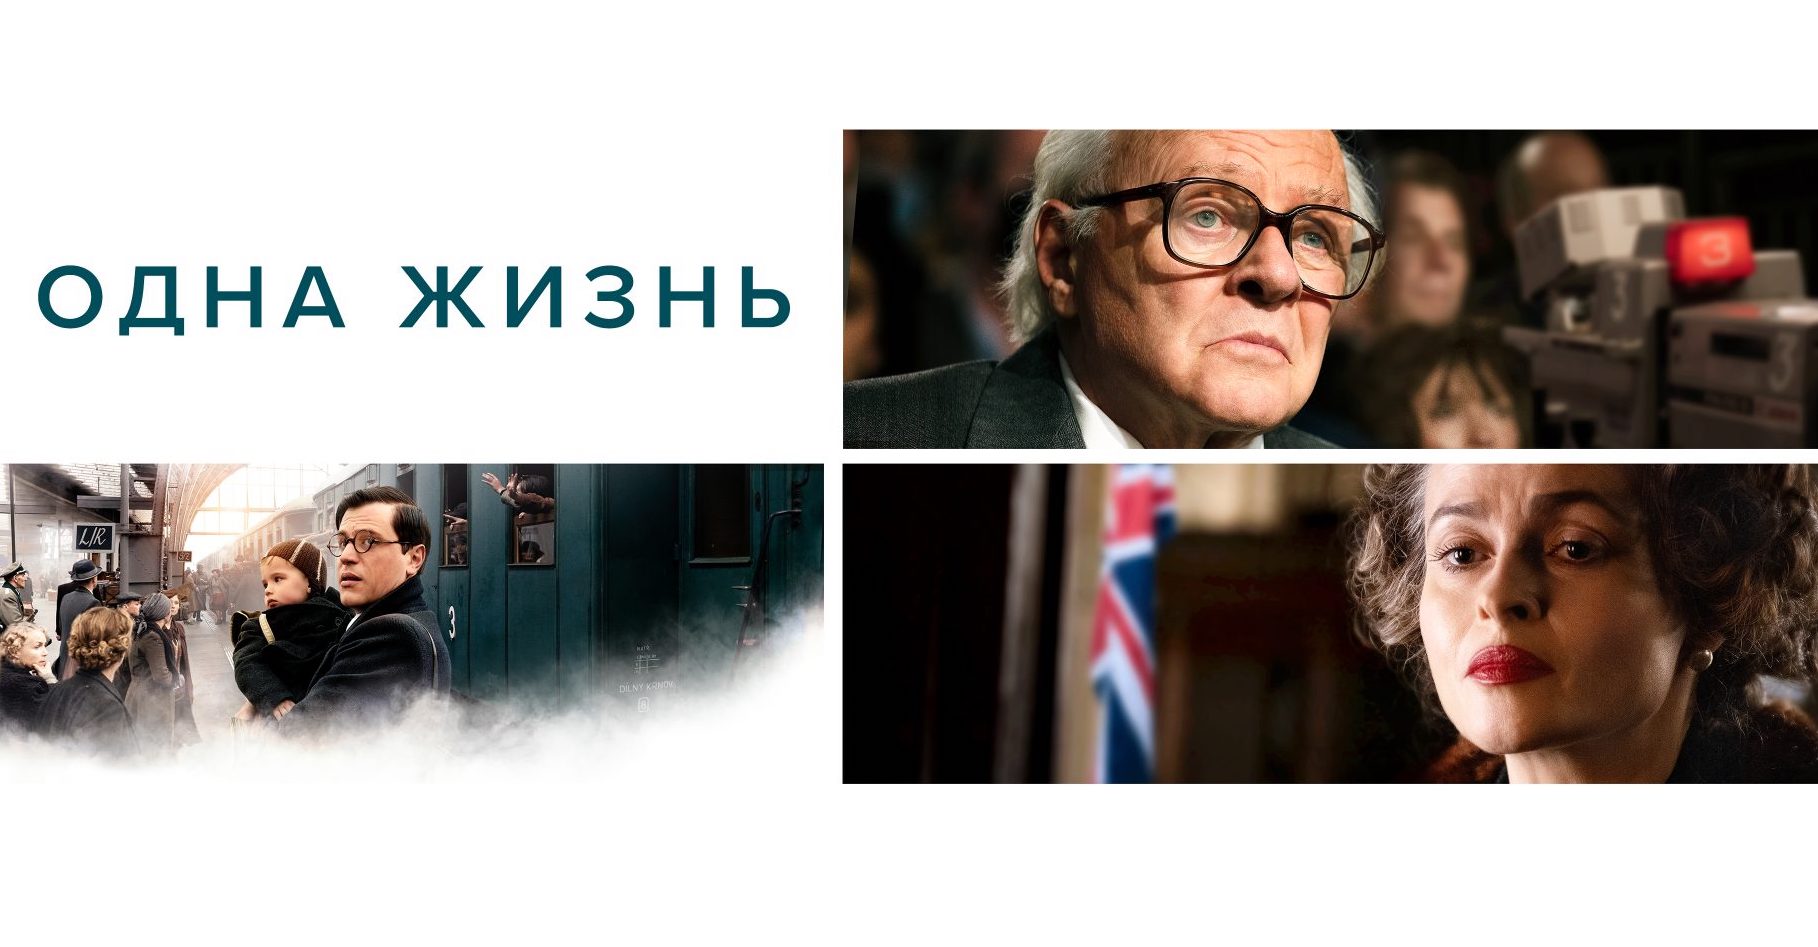 От отечественной комедии до европейского артхауса: какие фильмы казахстанцы смотрели на Кинопоиске в апреле